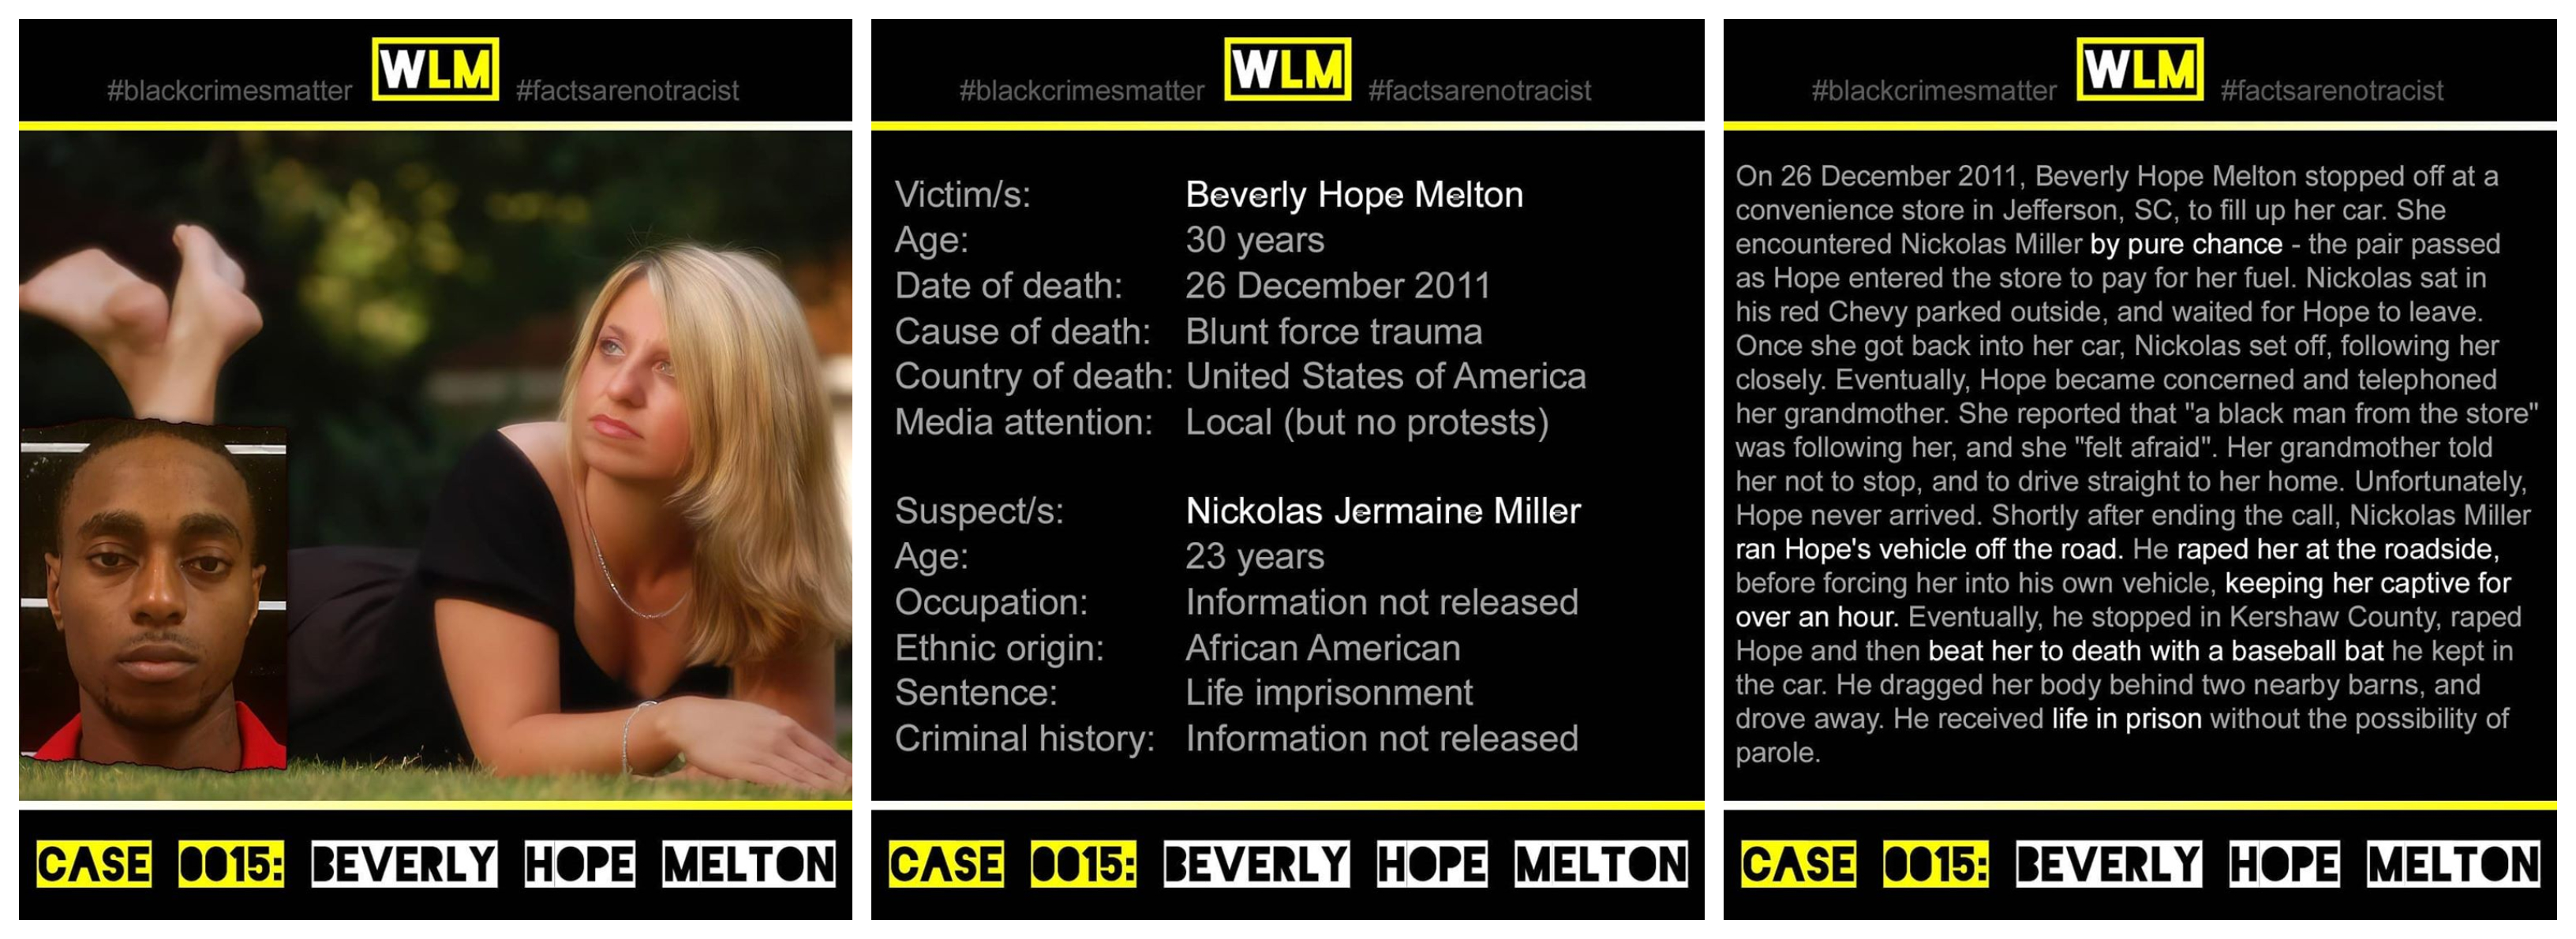 case-015-beverly-hope-melton